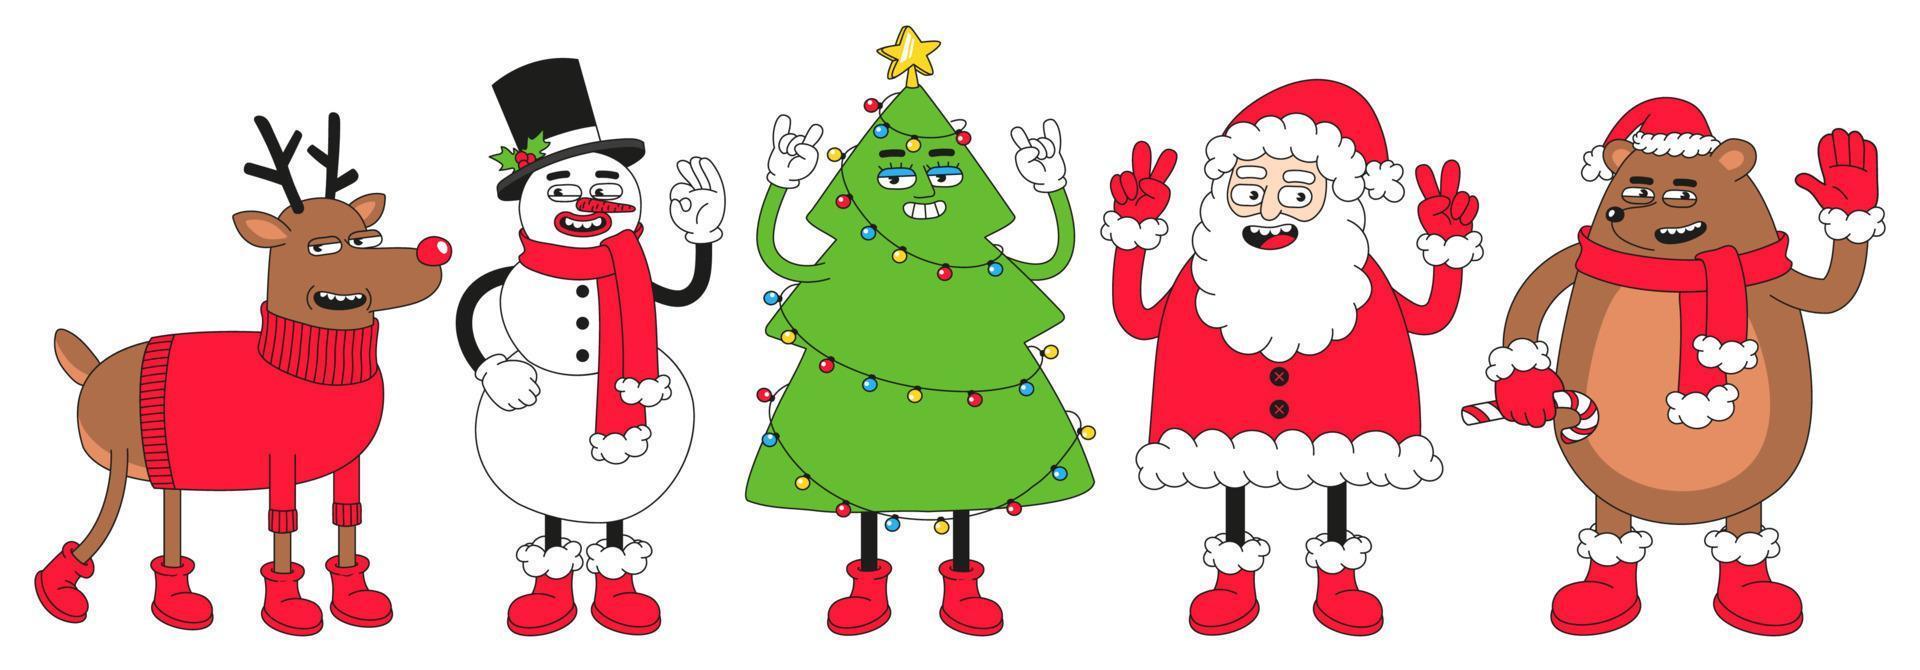 personajes de dibujos animados de navidad. divertido muñeco de nieve, reno, santa claus, árbol de navidad. vector